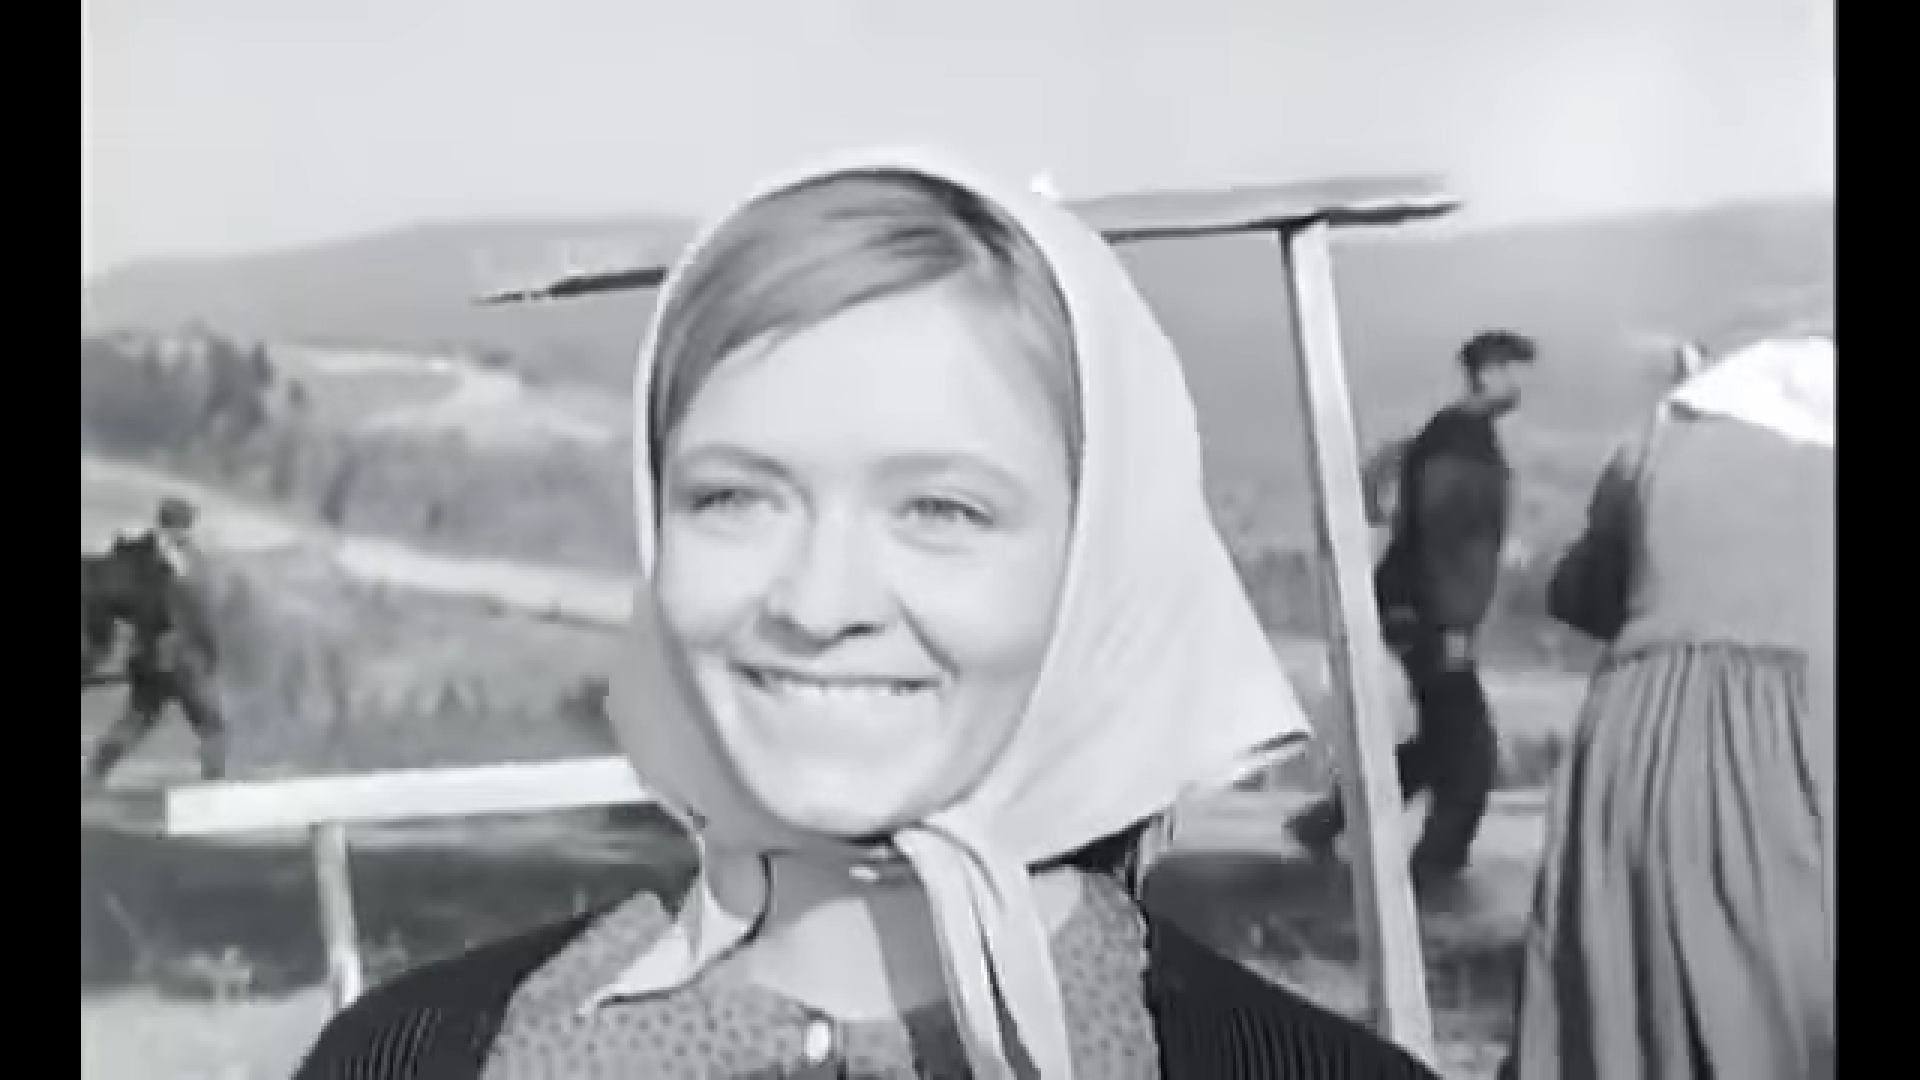 Kozara (1962.) u režiji Veljka Bulajića prvi je partizanski ep u povijesti jugoslavenske kinematografije. Milena Dravić u njemu igra glavnu žensku ulogu, Milju. Film je napravljen kako bi se obilježila 20. godišnjica bitke na Kozari. 